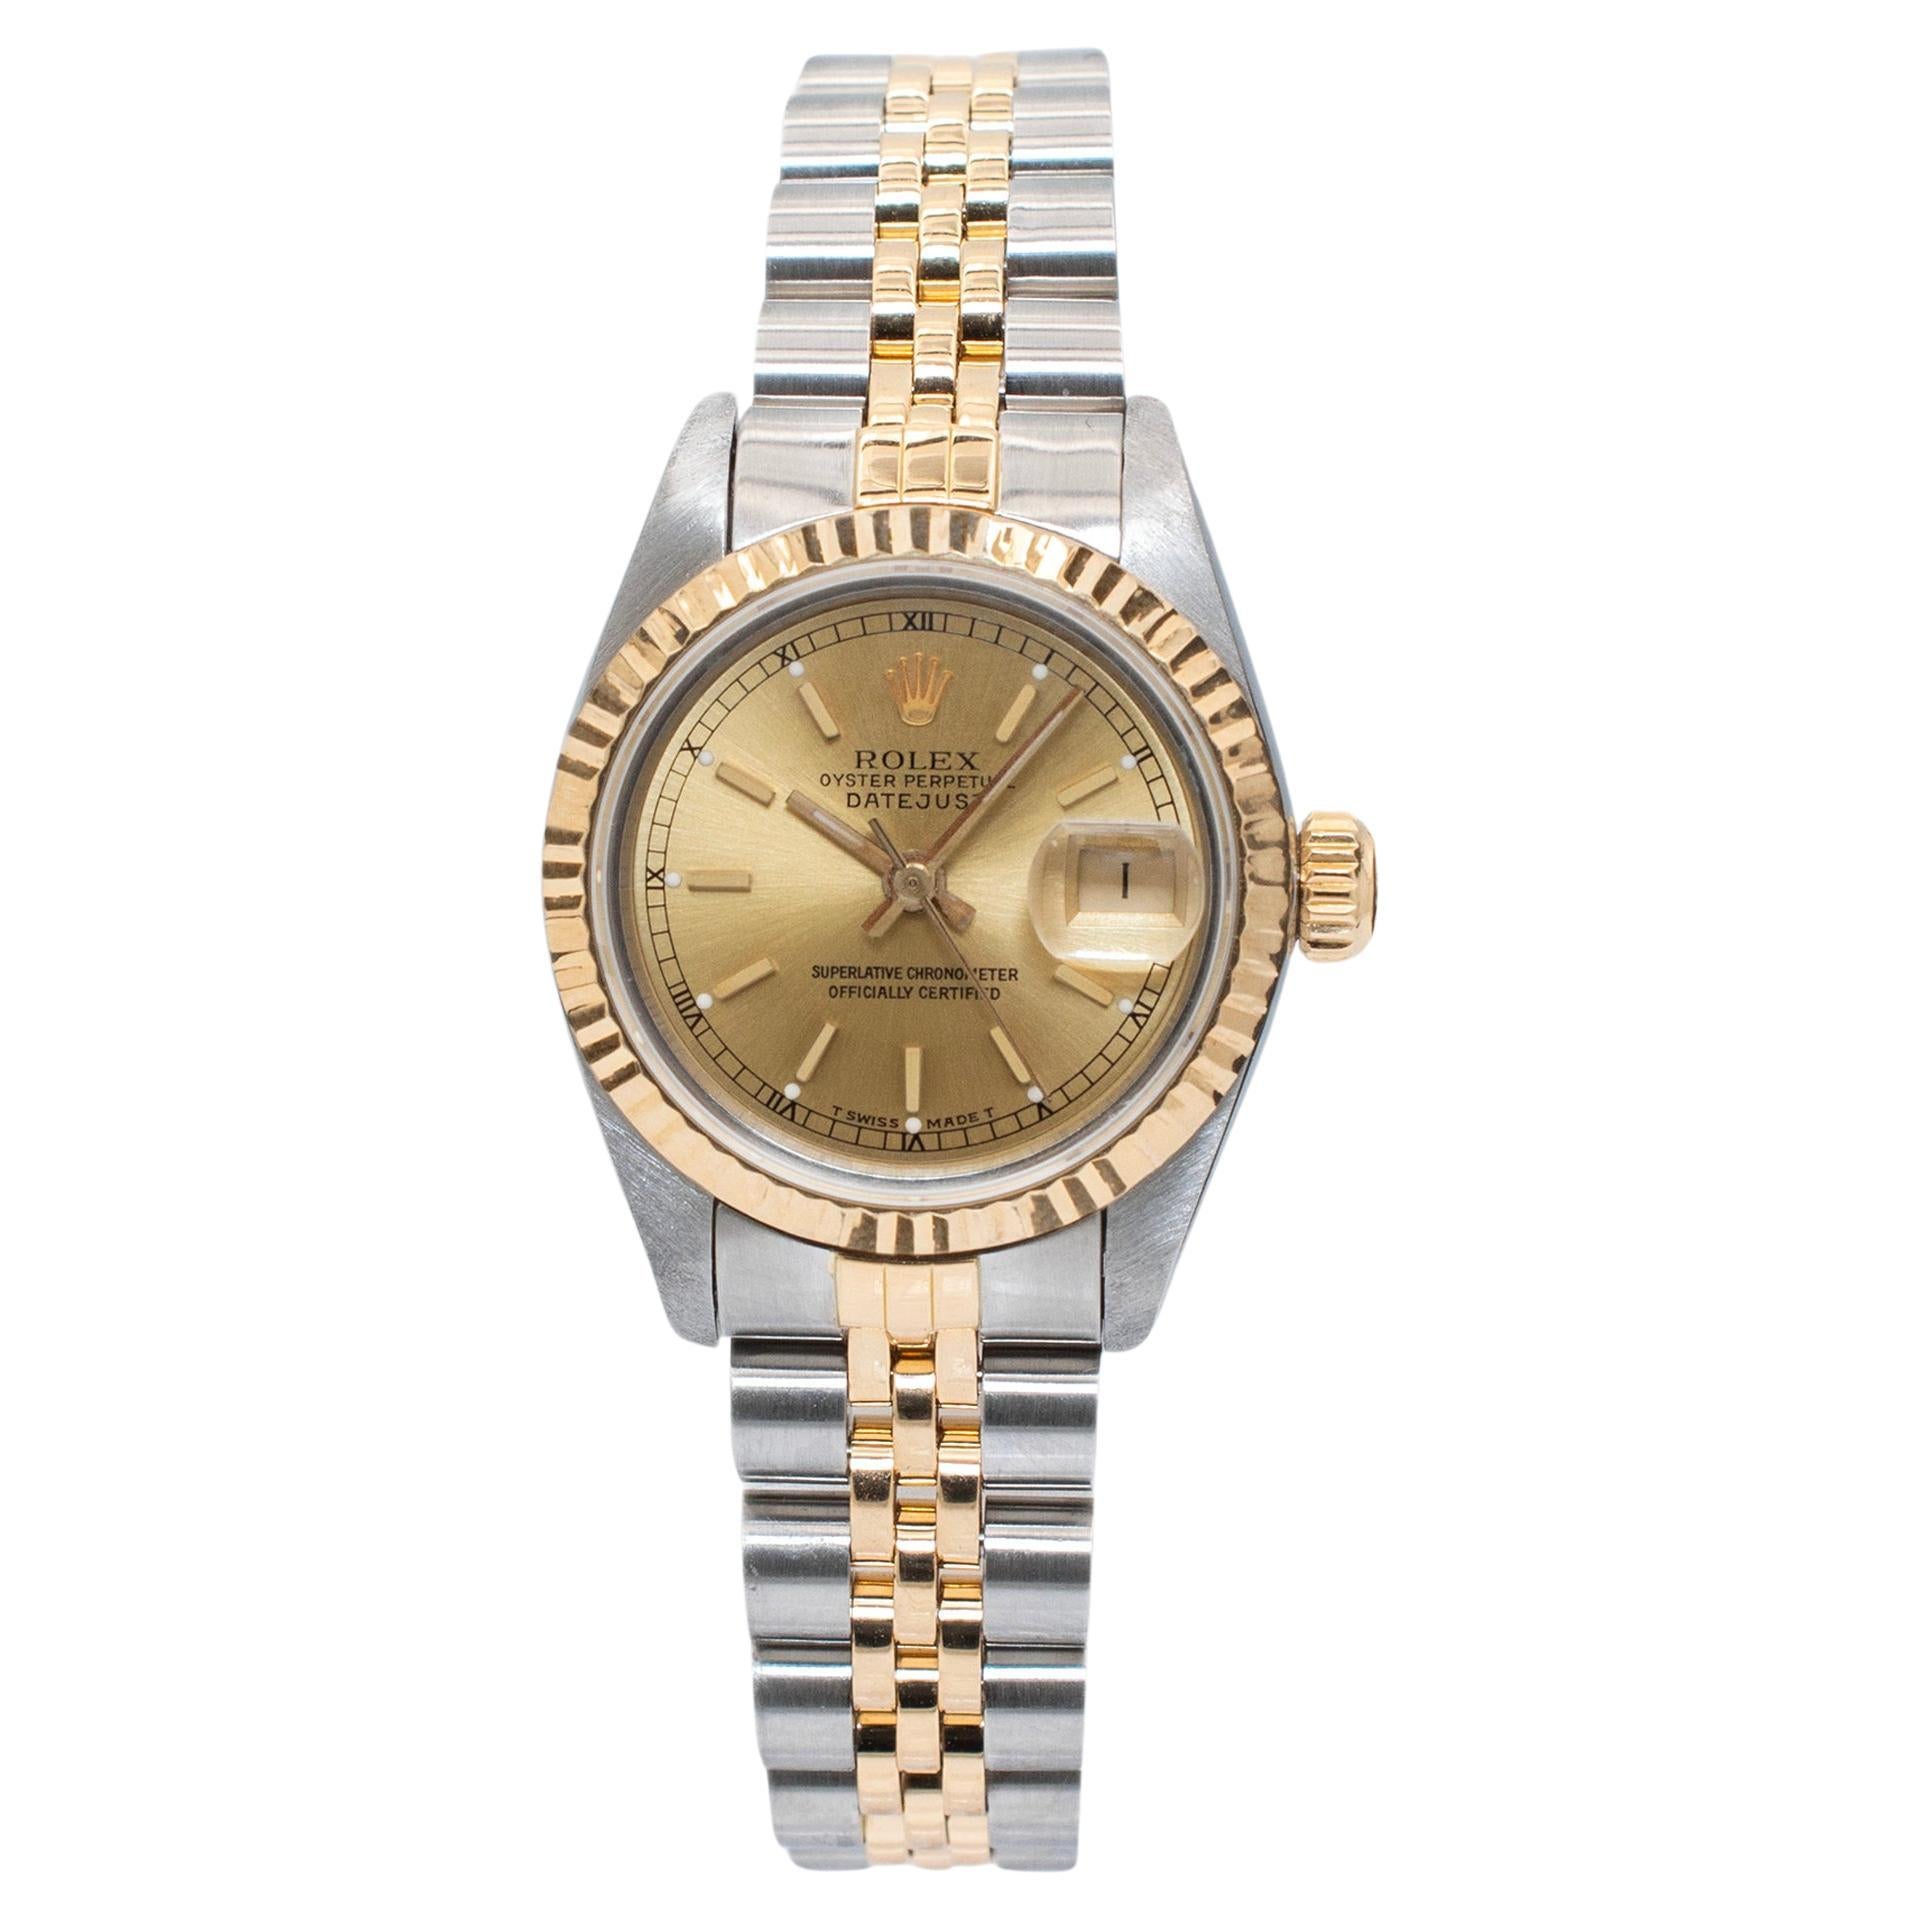 Did Rolex ever make a quartz watch?